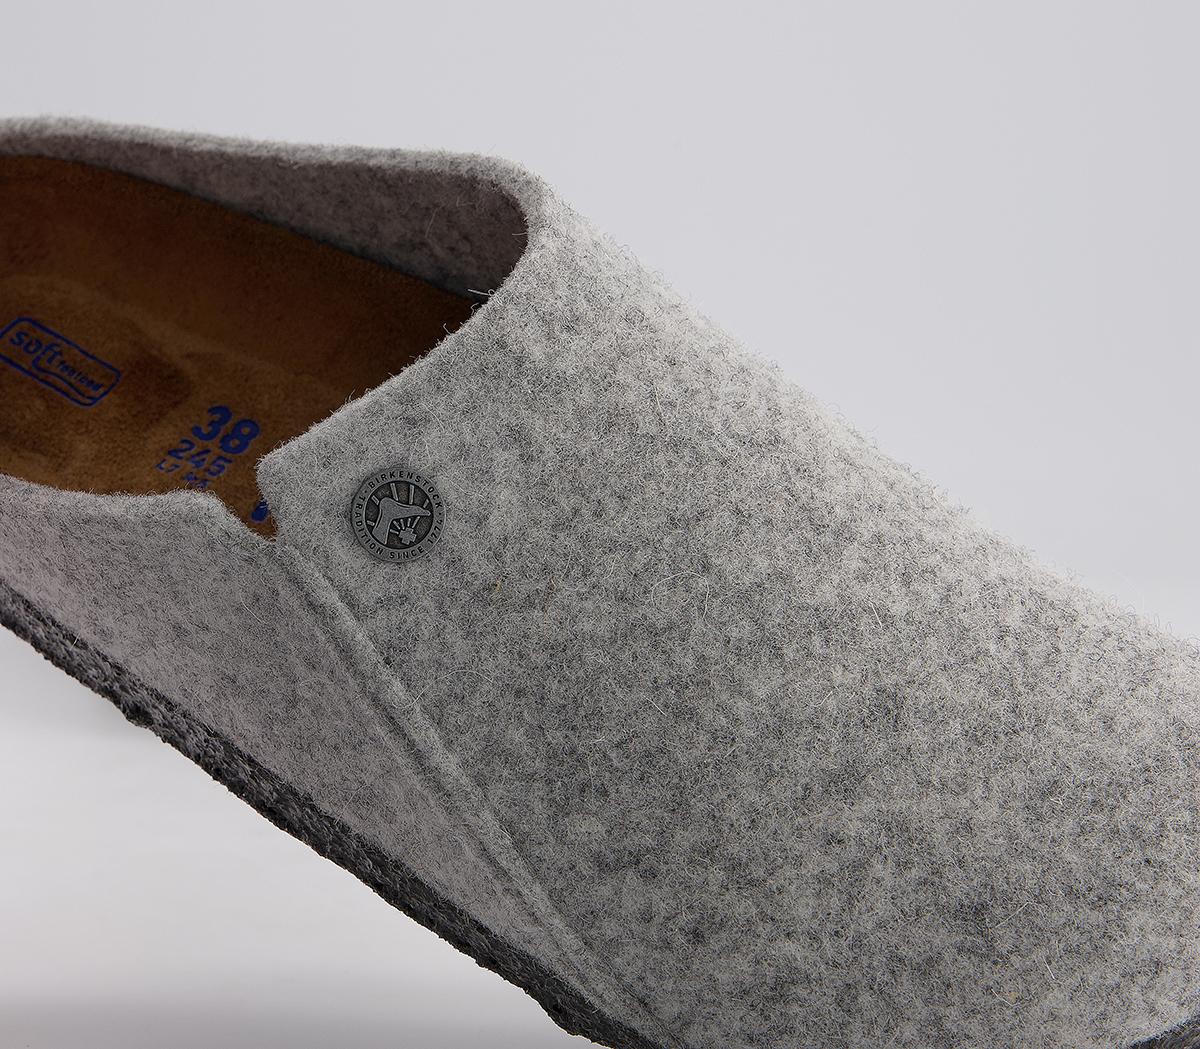 BIRKENSTOCK Zermatt Slippers Light Grey - Flat Shoes for Women